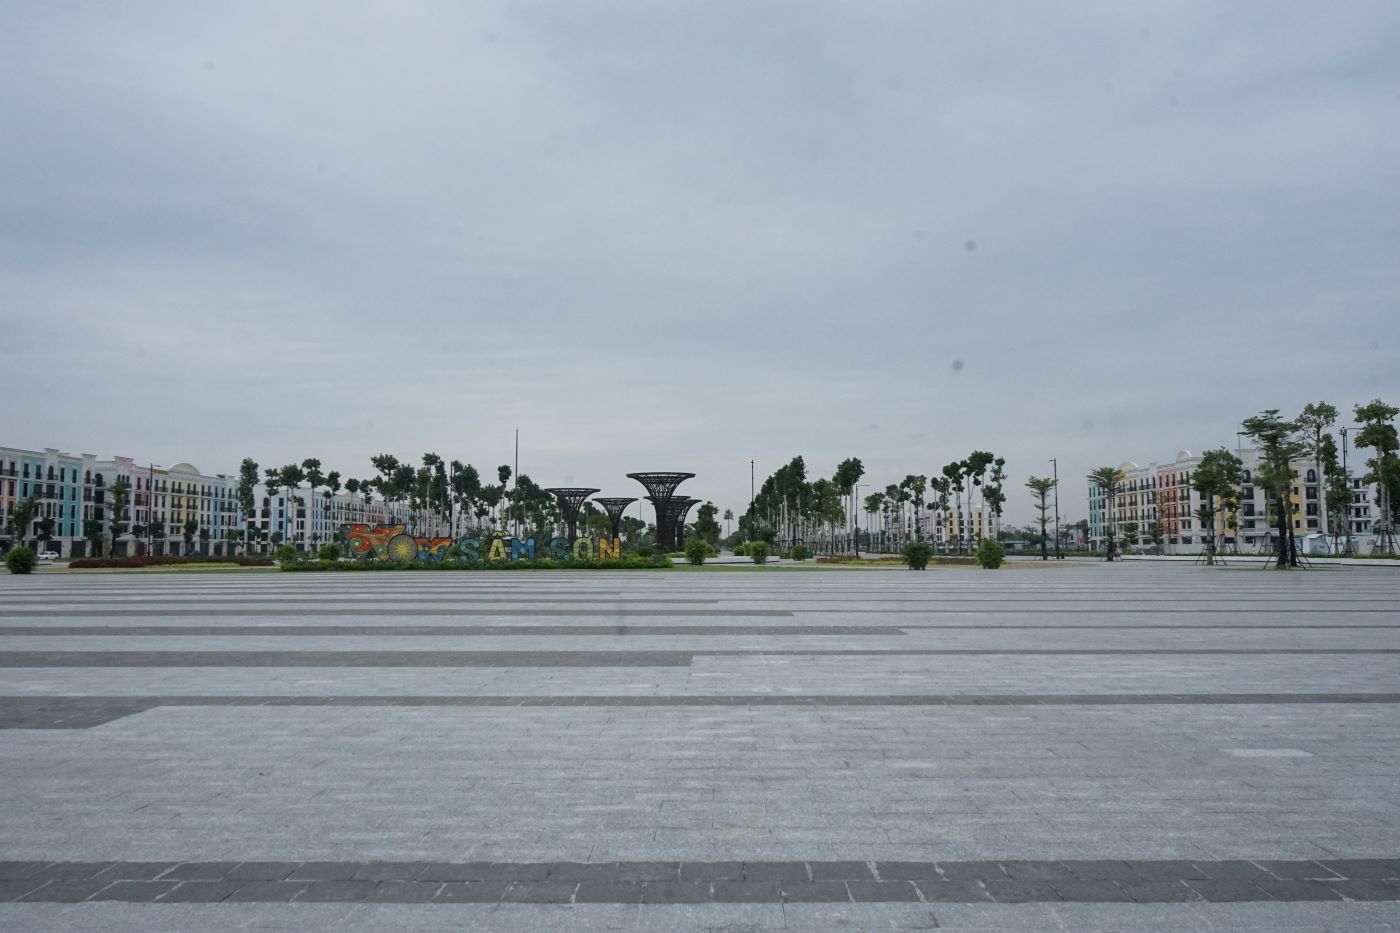 Khu vực quảng trường biển Sầm Sơn (nơi tổ chức các sự kiện lớn) cũng trở nên thoáng đãng, không có người. Ảnh: Quách Du